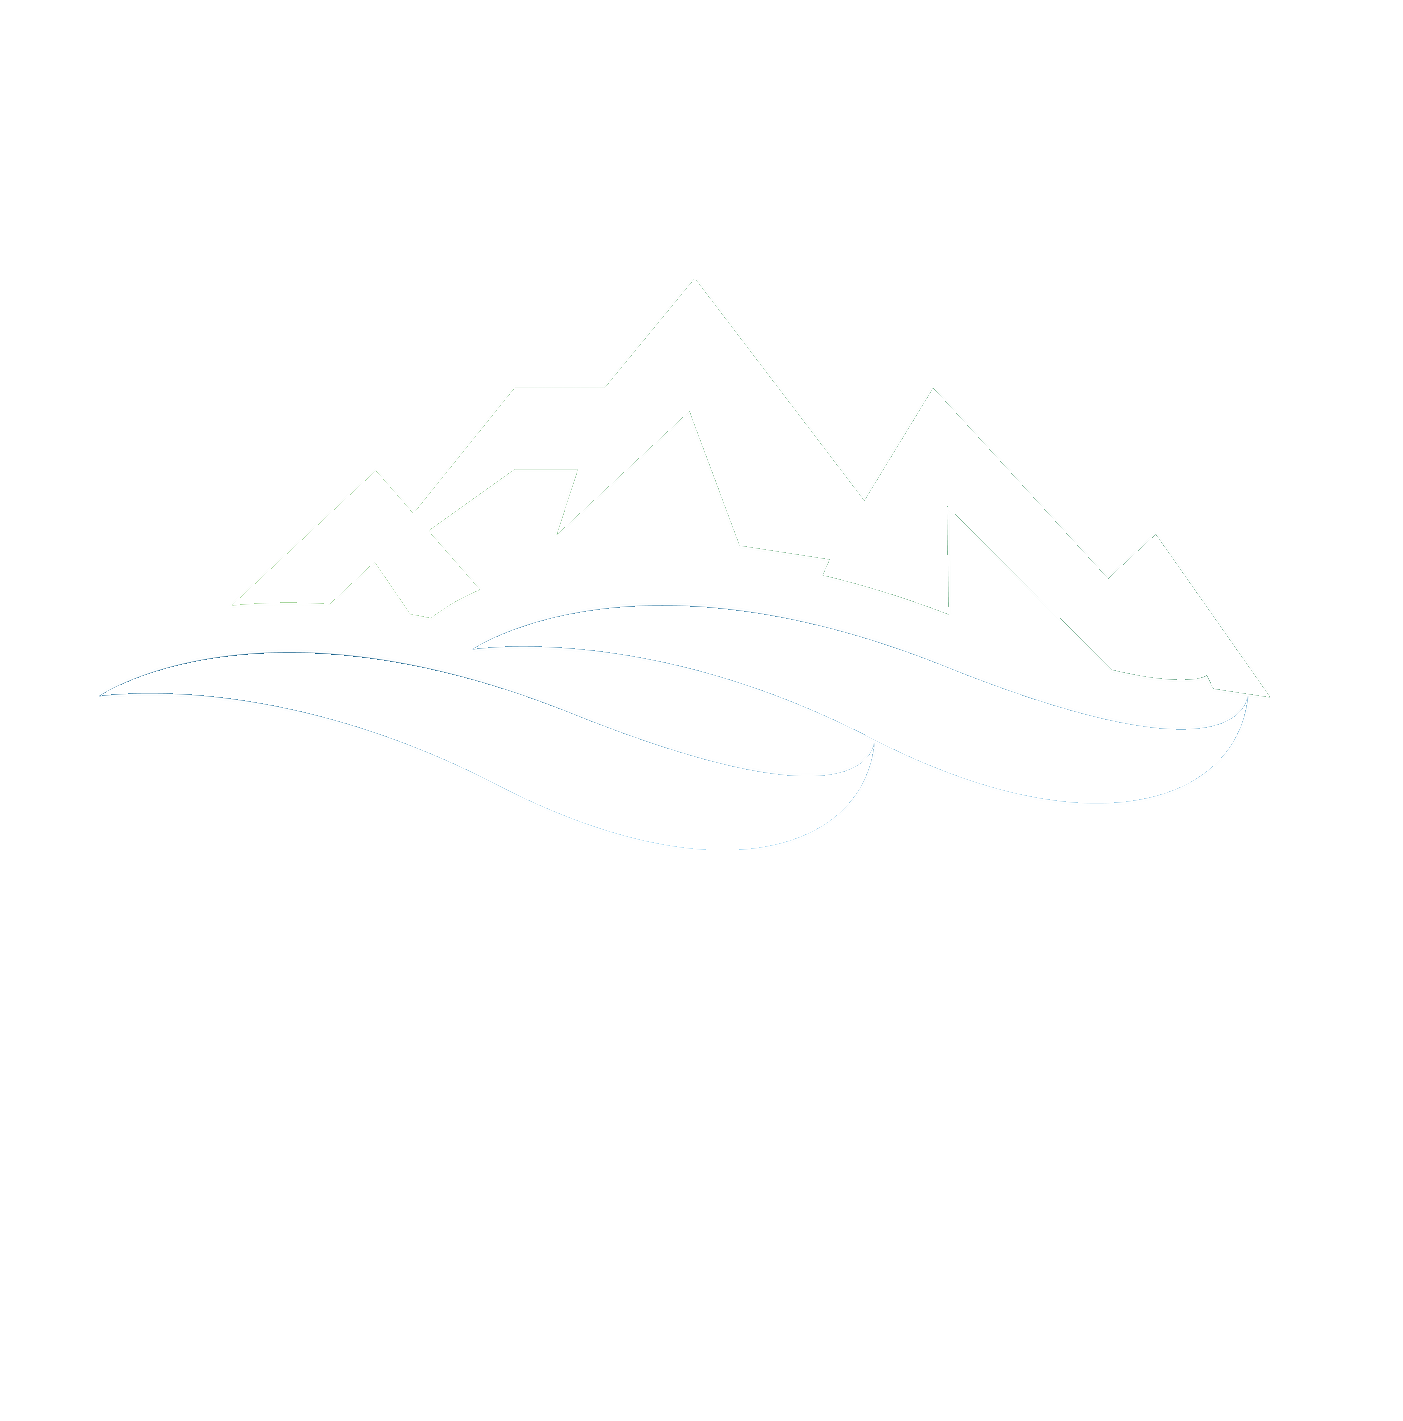 Lushmeadows Mountain Estates